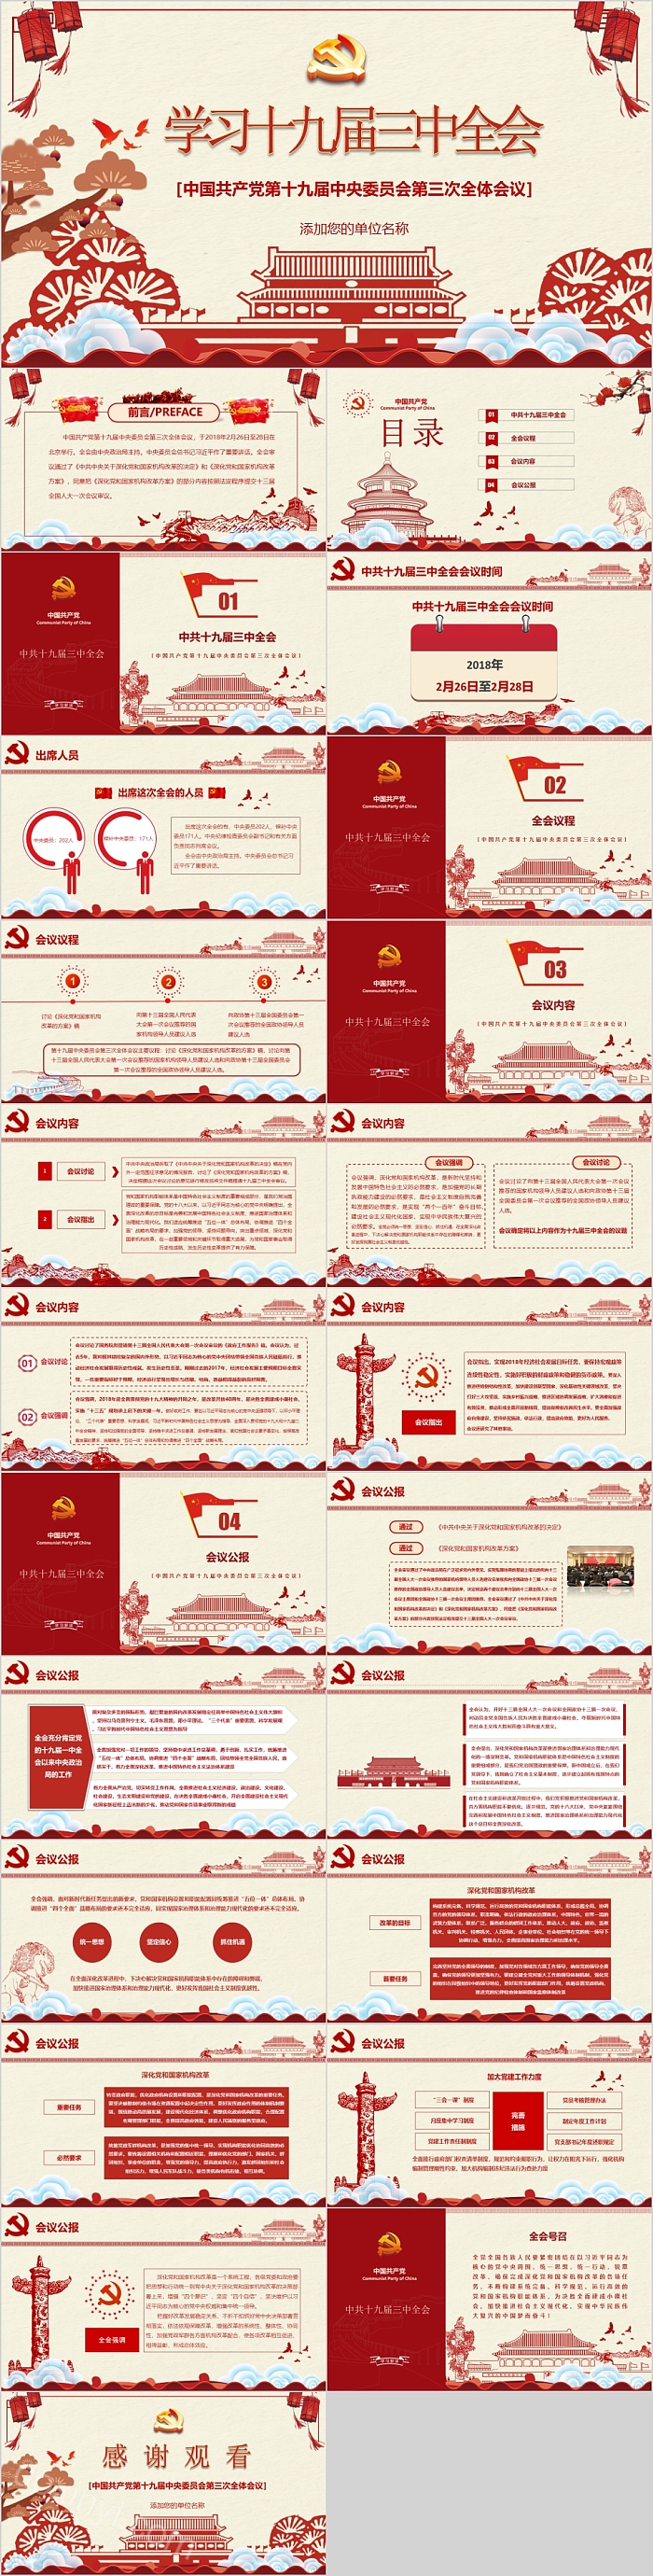 学习十九届三中全会 中国共产党第十九届中央委员会第三次全体会议